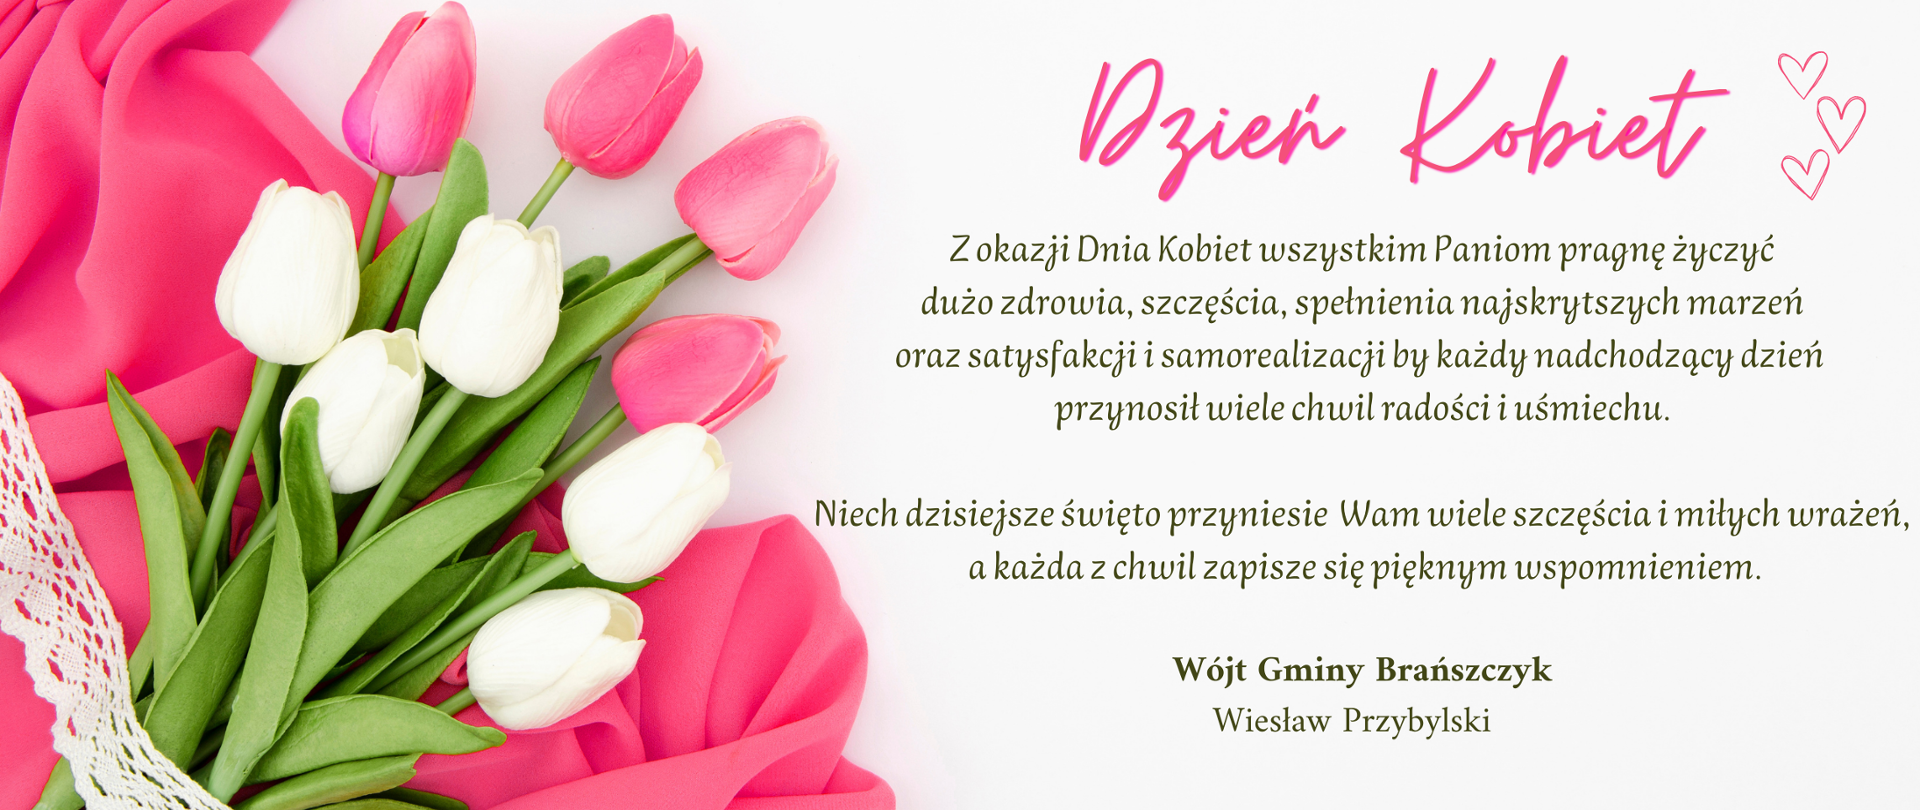 Baner z życzeniami, bukiet tulipanów na różowym materiale, obok tekst życzeń.